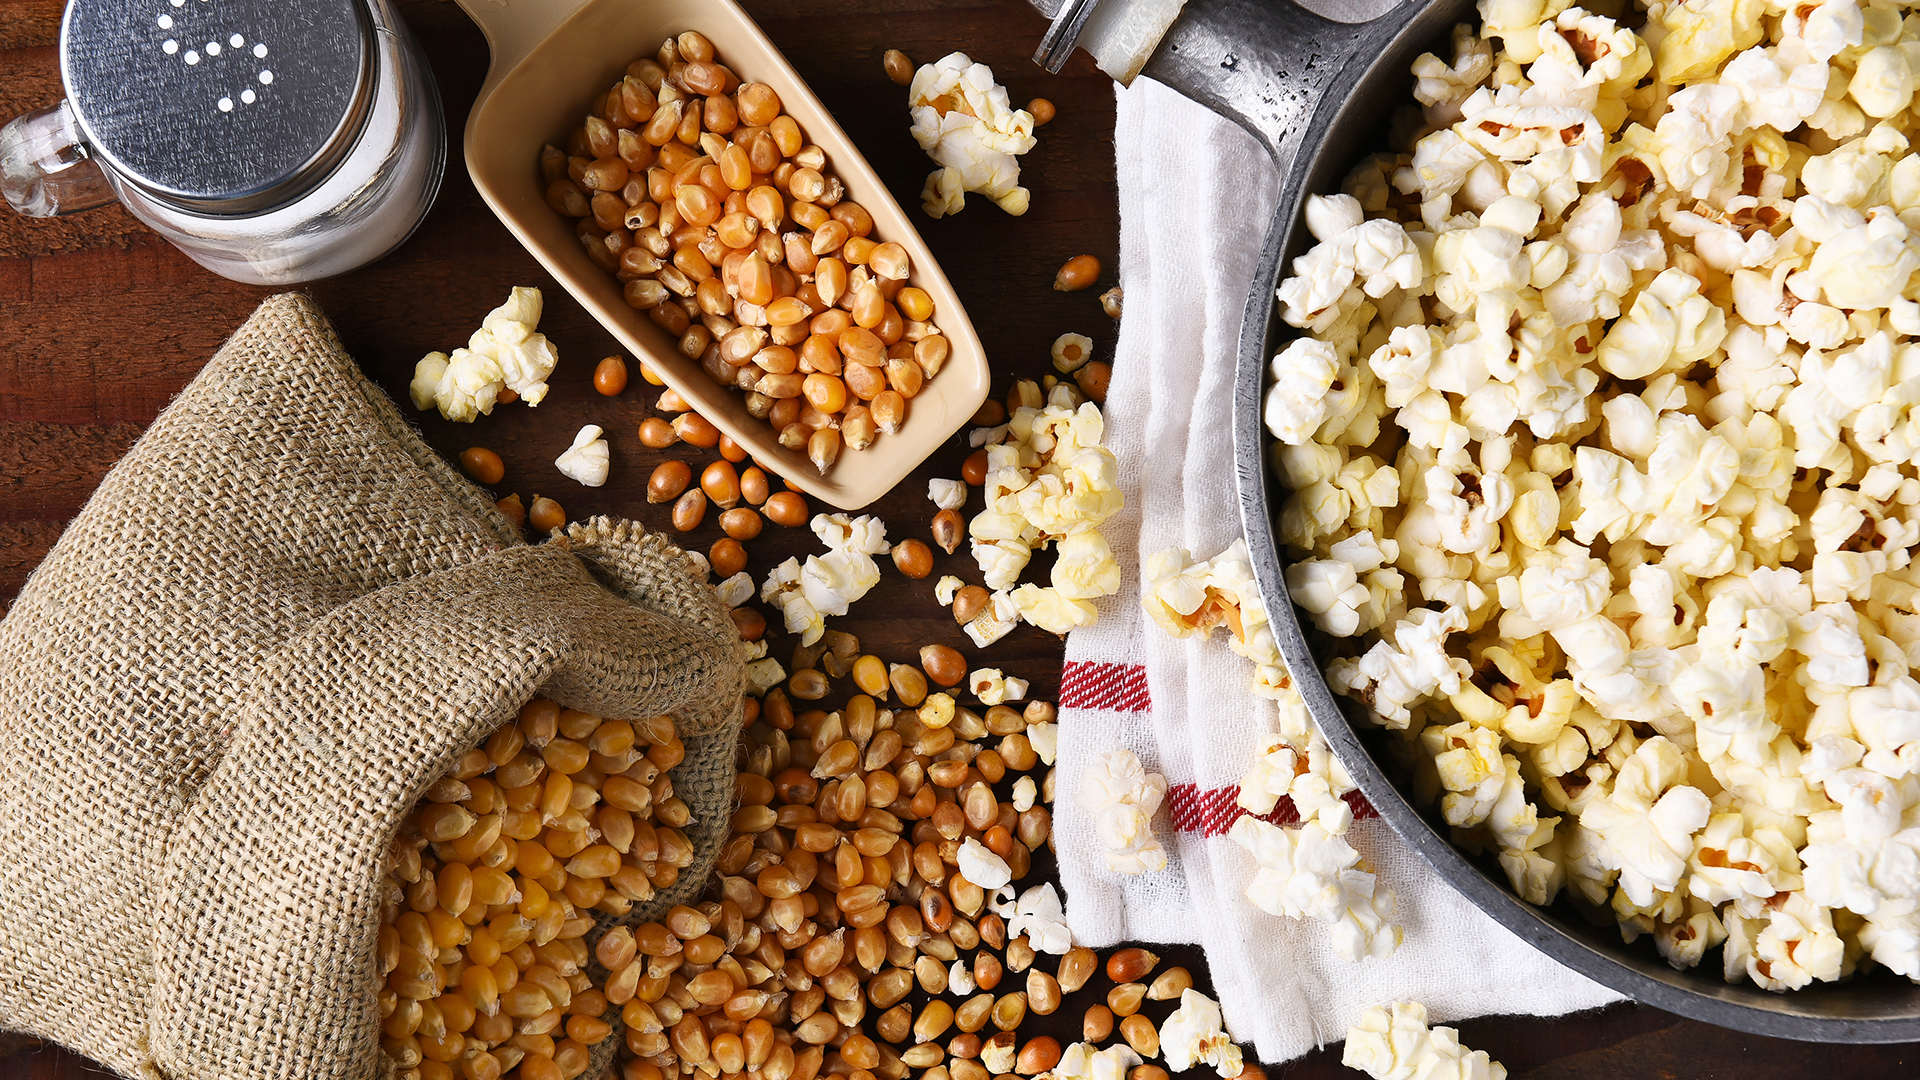 Tasty recipes to enjoy on National Popcorn Day